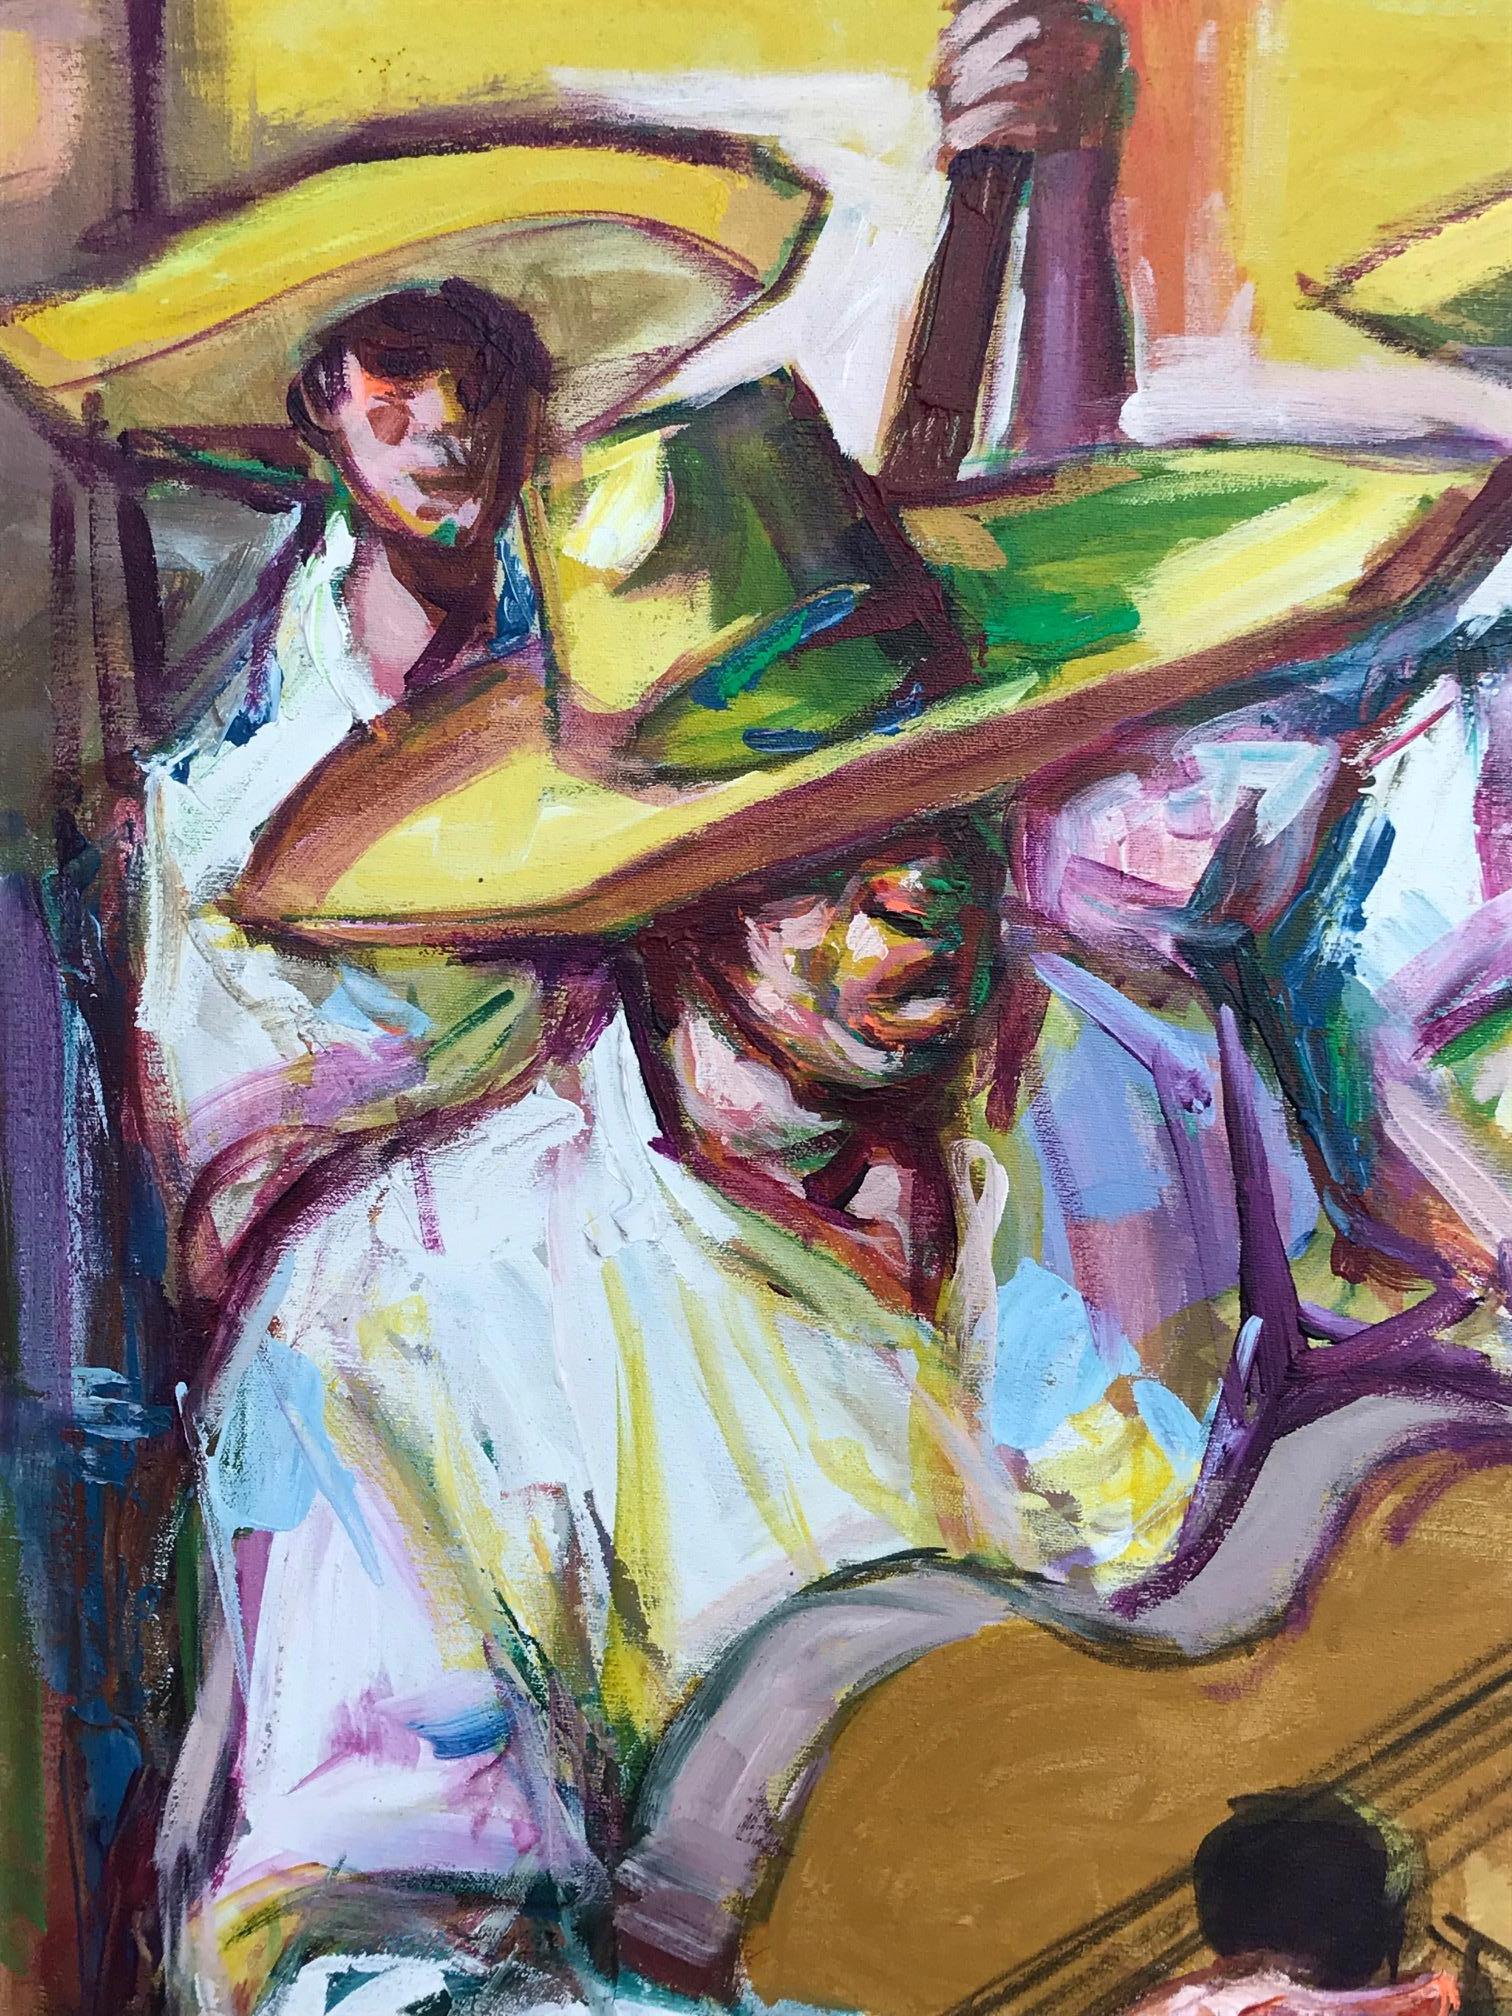 Peinture d'Alberto Ruiz Vela, né au Mexique. Il a également travaillé en Illinois et en Californie. La peinture est signée dans la partie inférieure gauche du tableau. La peinture mesure 31